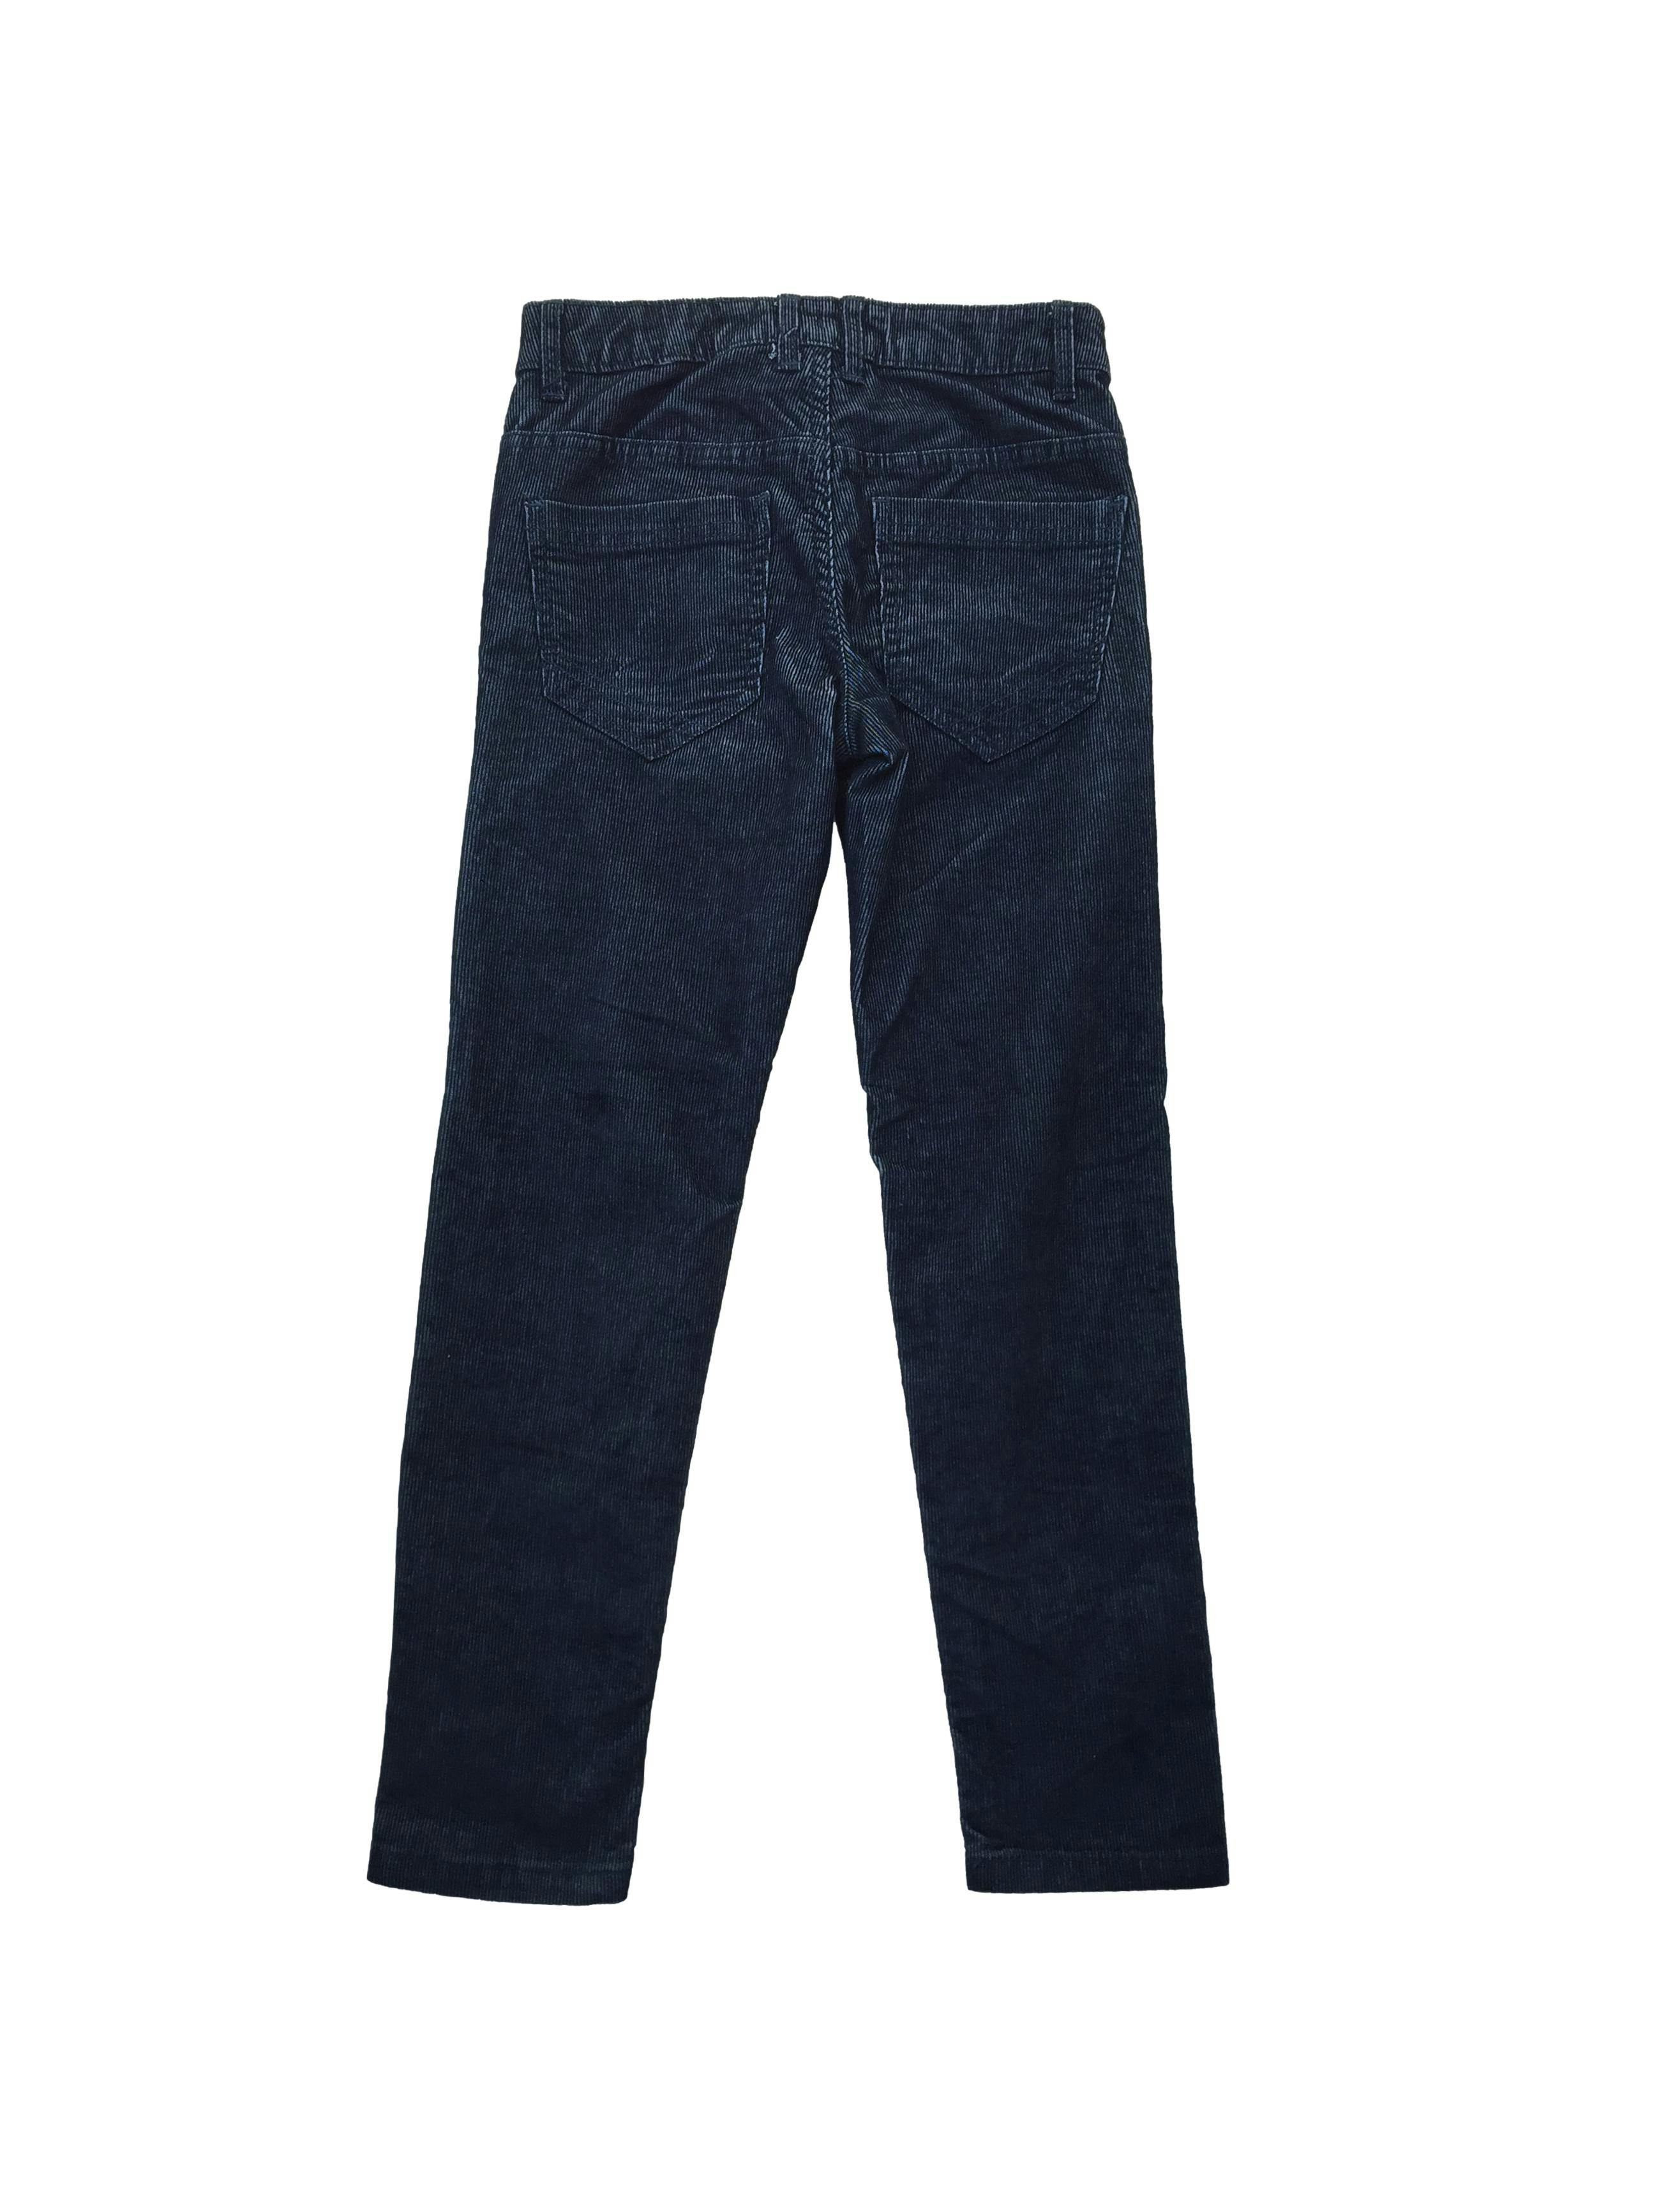 Pantalón azul de corduroy, five-pockets, cintura regulable.